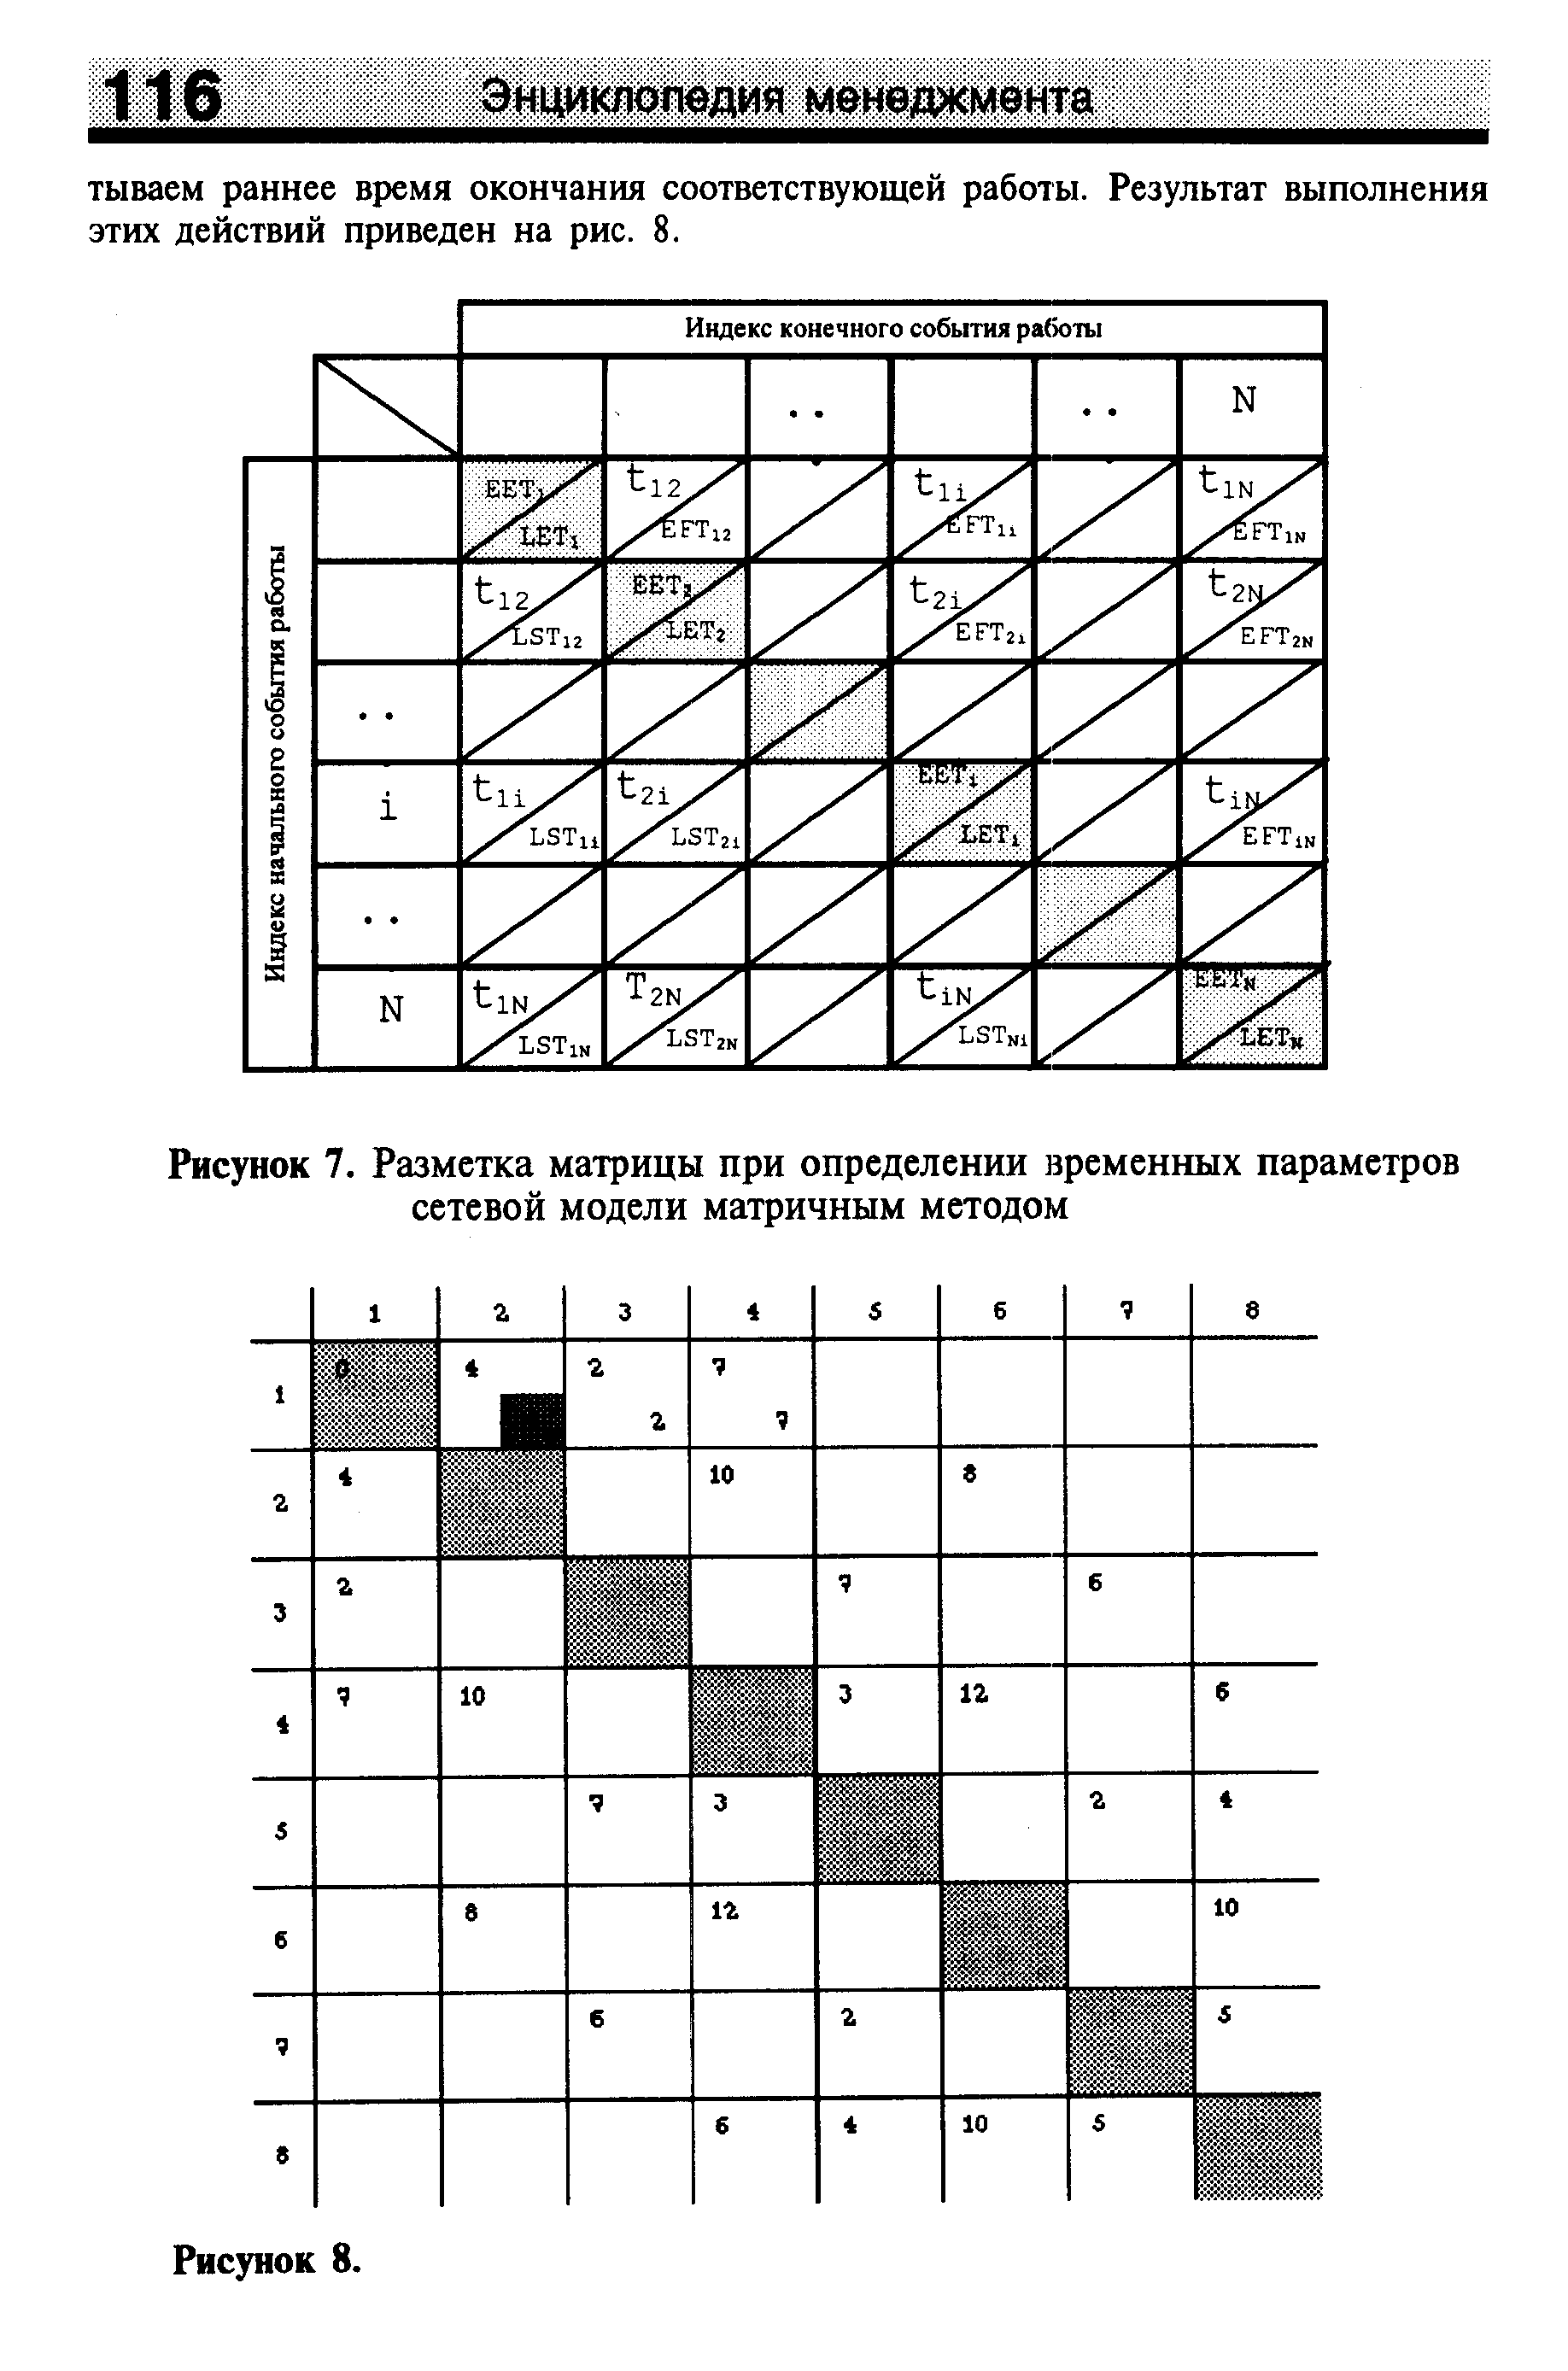 Рисунок 7. Разметка матрицы при определении временных параметров сетевой модели матричным методом
